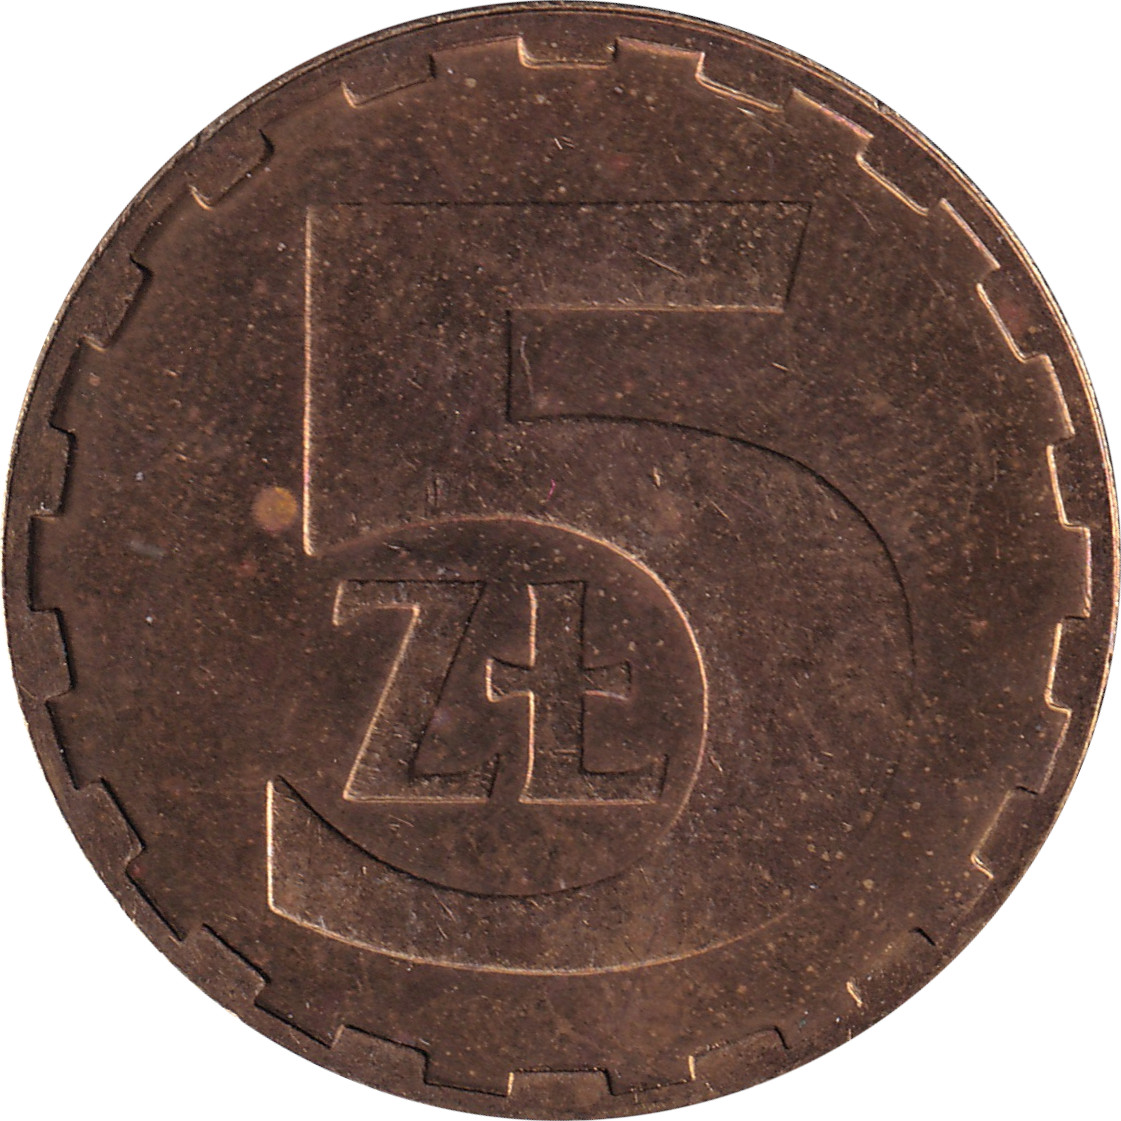 5 zlotych - République populaire - Revers simple - Type 2